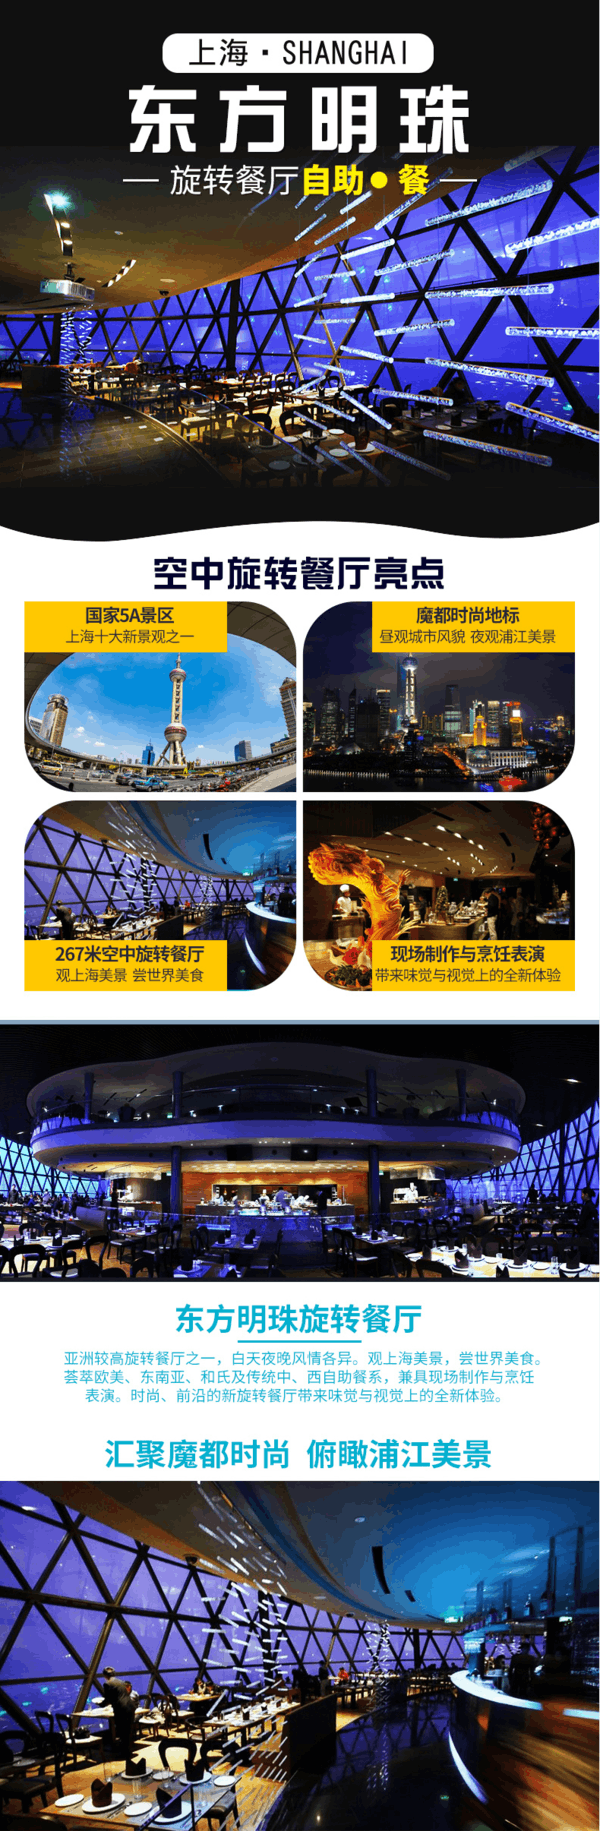 登楼观光无需排队：上海东方明珠267米旋转餐厅自助午/晚餐+东方明珠门票